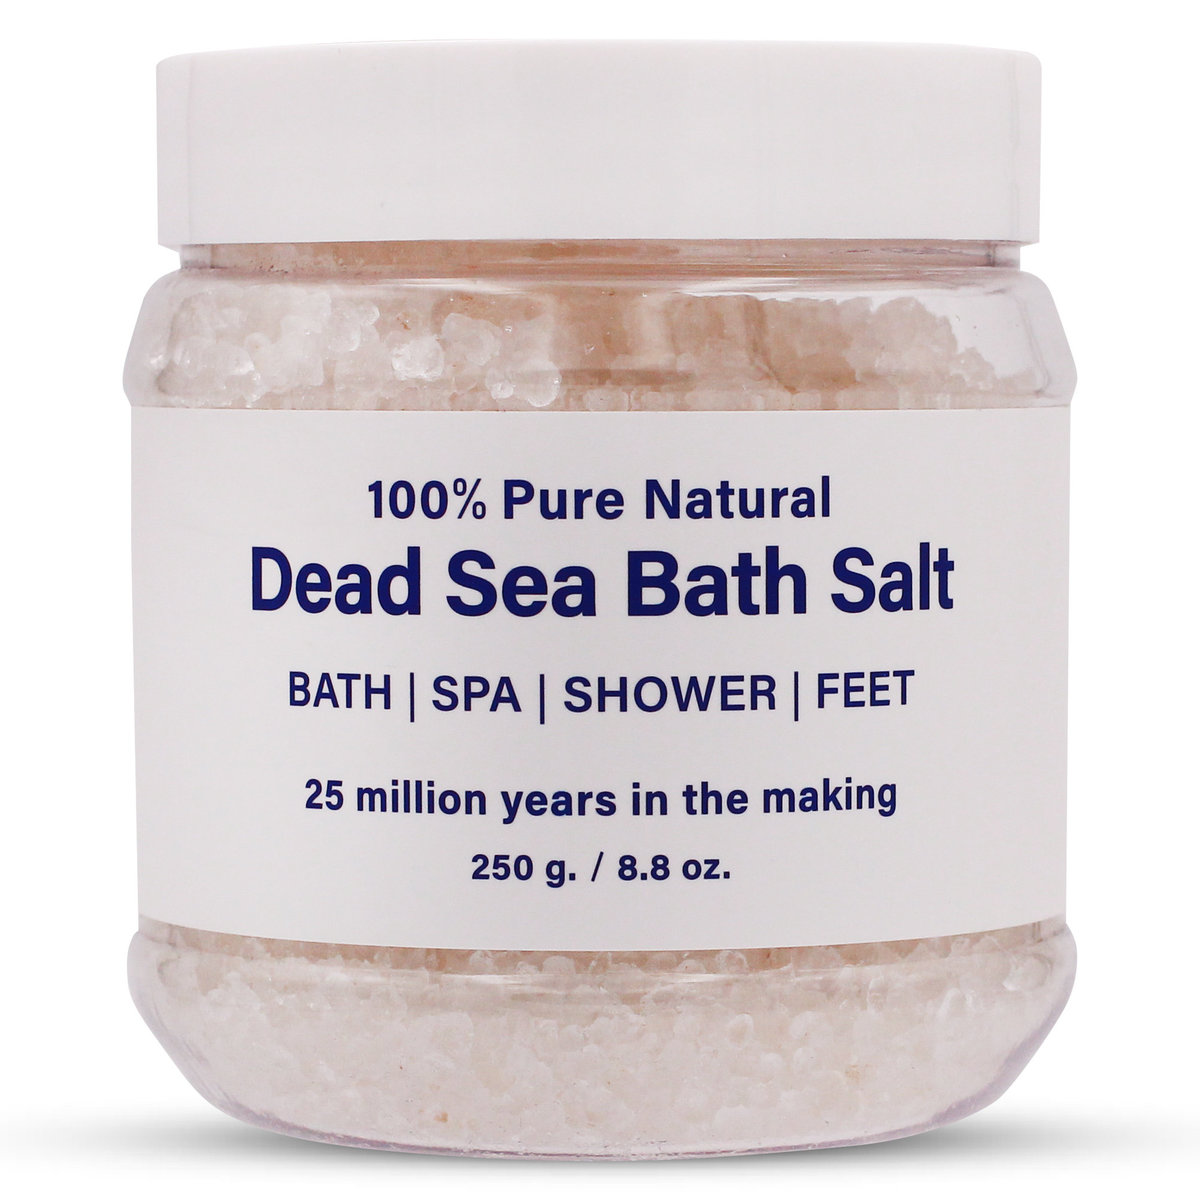 死海鹽 (250g)